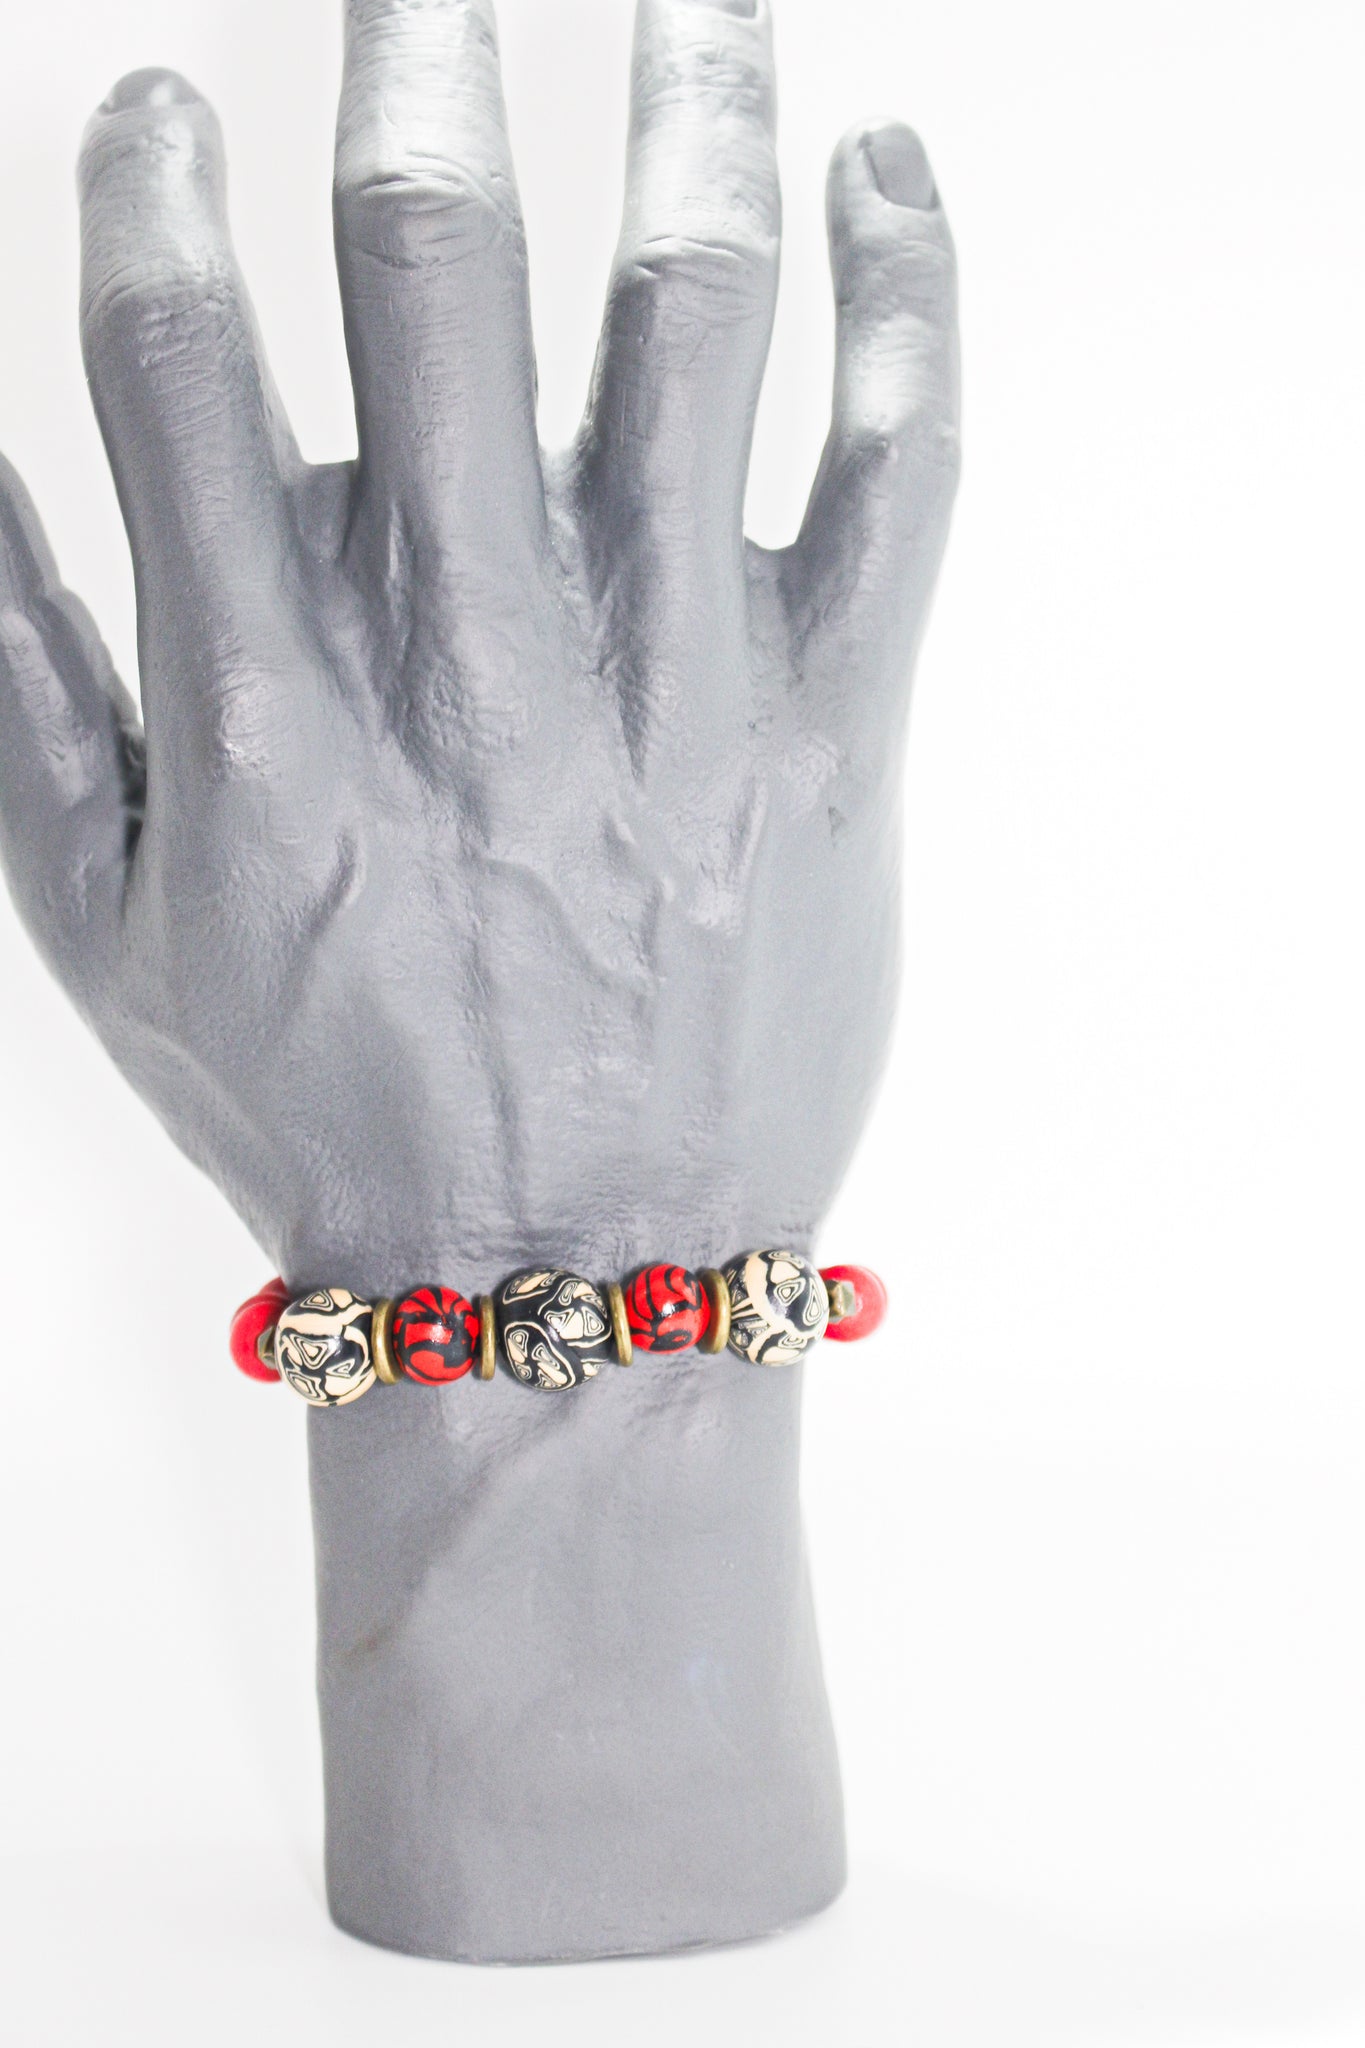 KD-SS010 The "Rebel" Red Hand-Rolled, Gender-Neutral Adjustable Bracelet